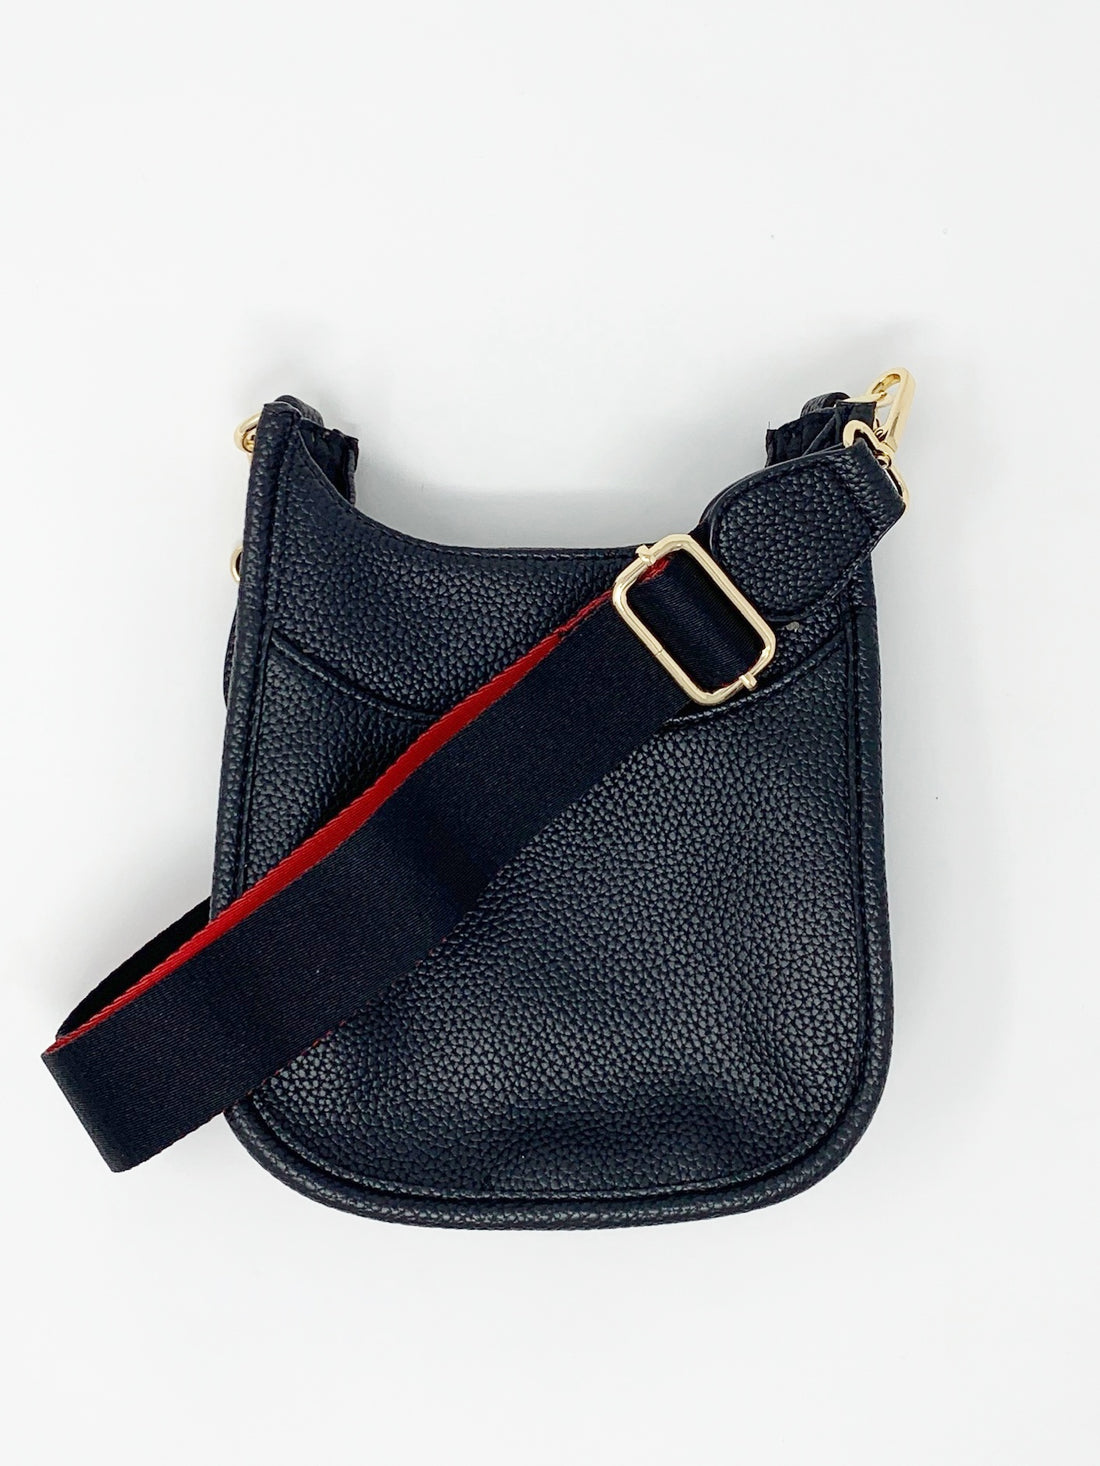 Mini Saddle Bag in Vegan Leather in Navy